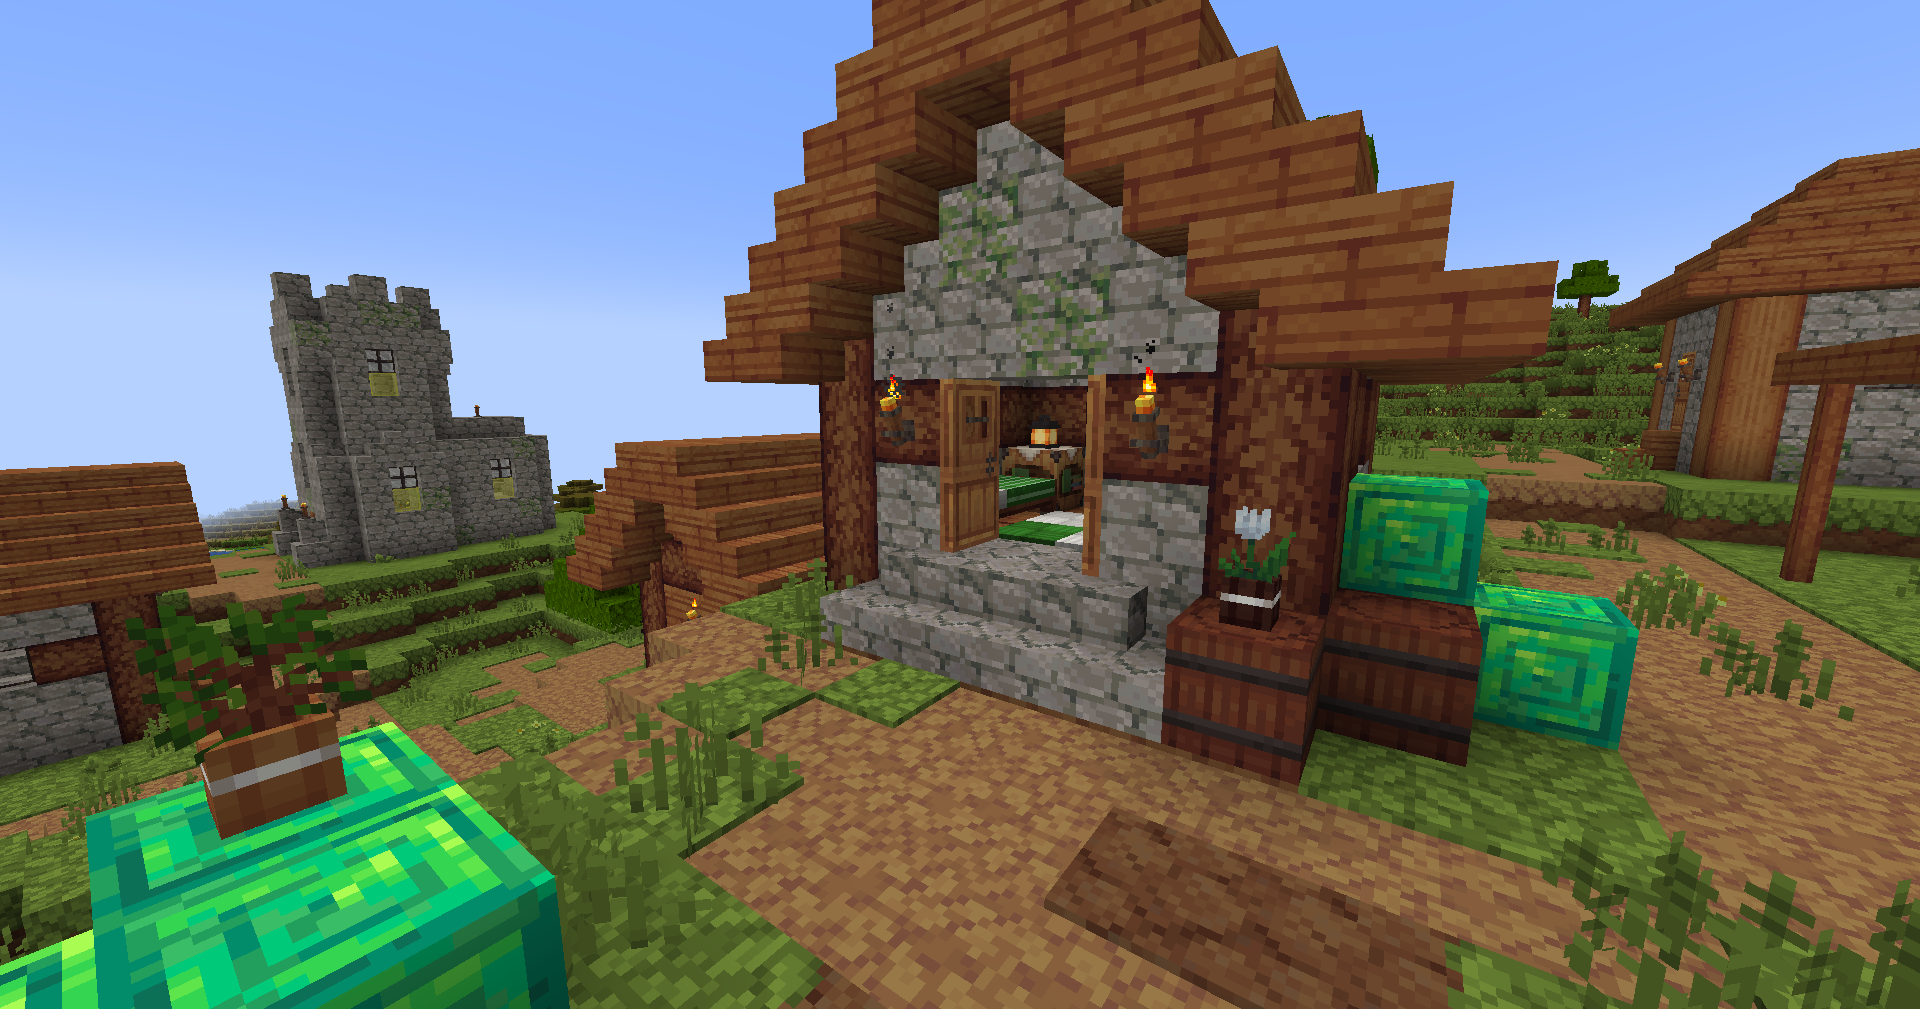 Emerald village